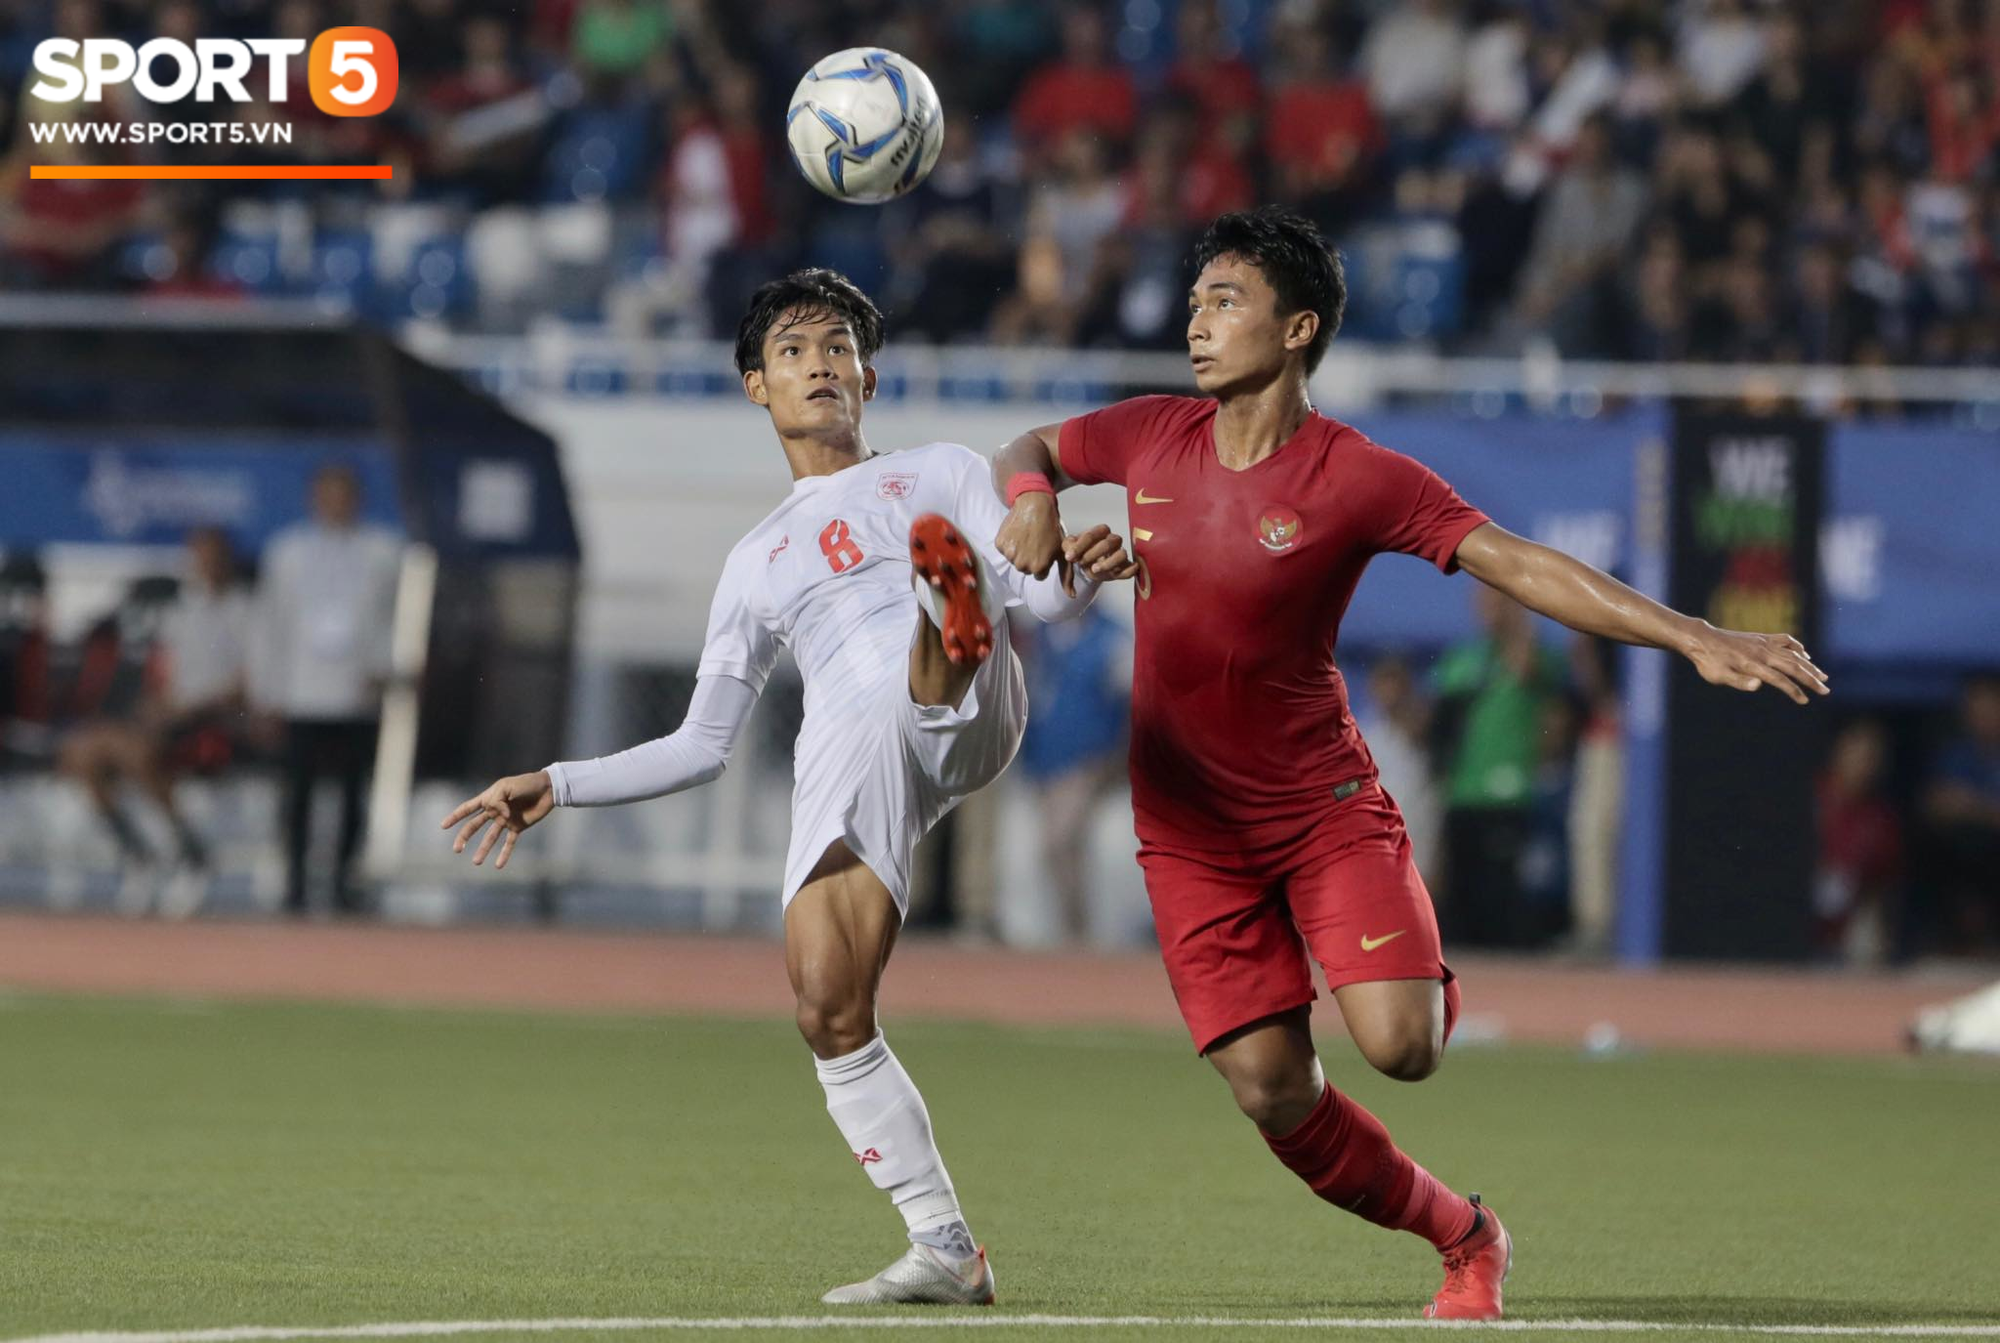 U22 Indonesia 4-2 U22 Myanmar: Vượt Myanmar, Indonesia hẹn Việt Nam tại trận chung kết SEA Games 30 - Ảnh 11.